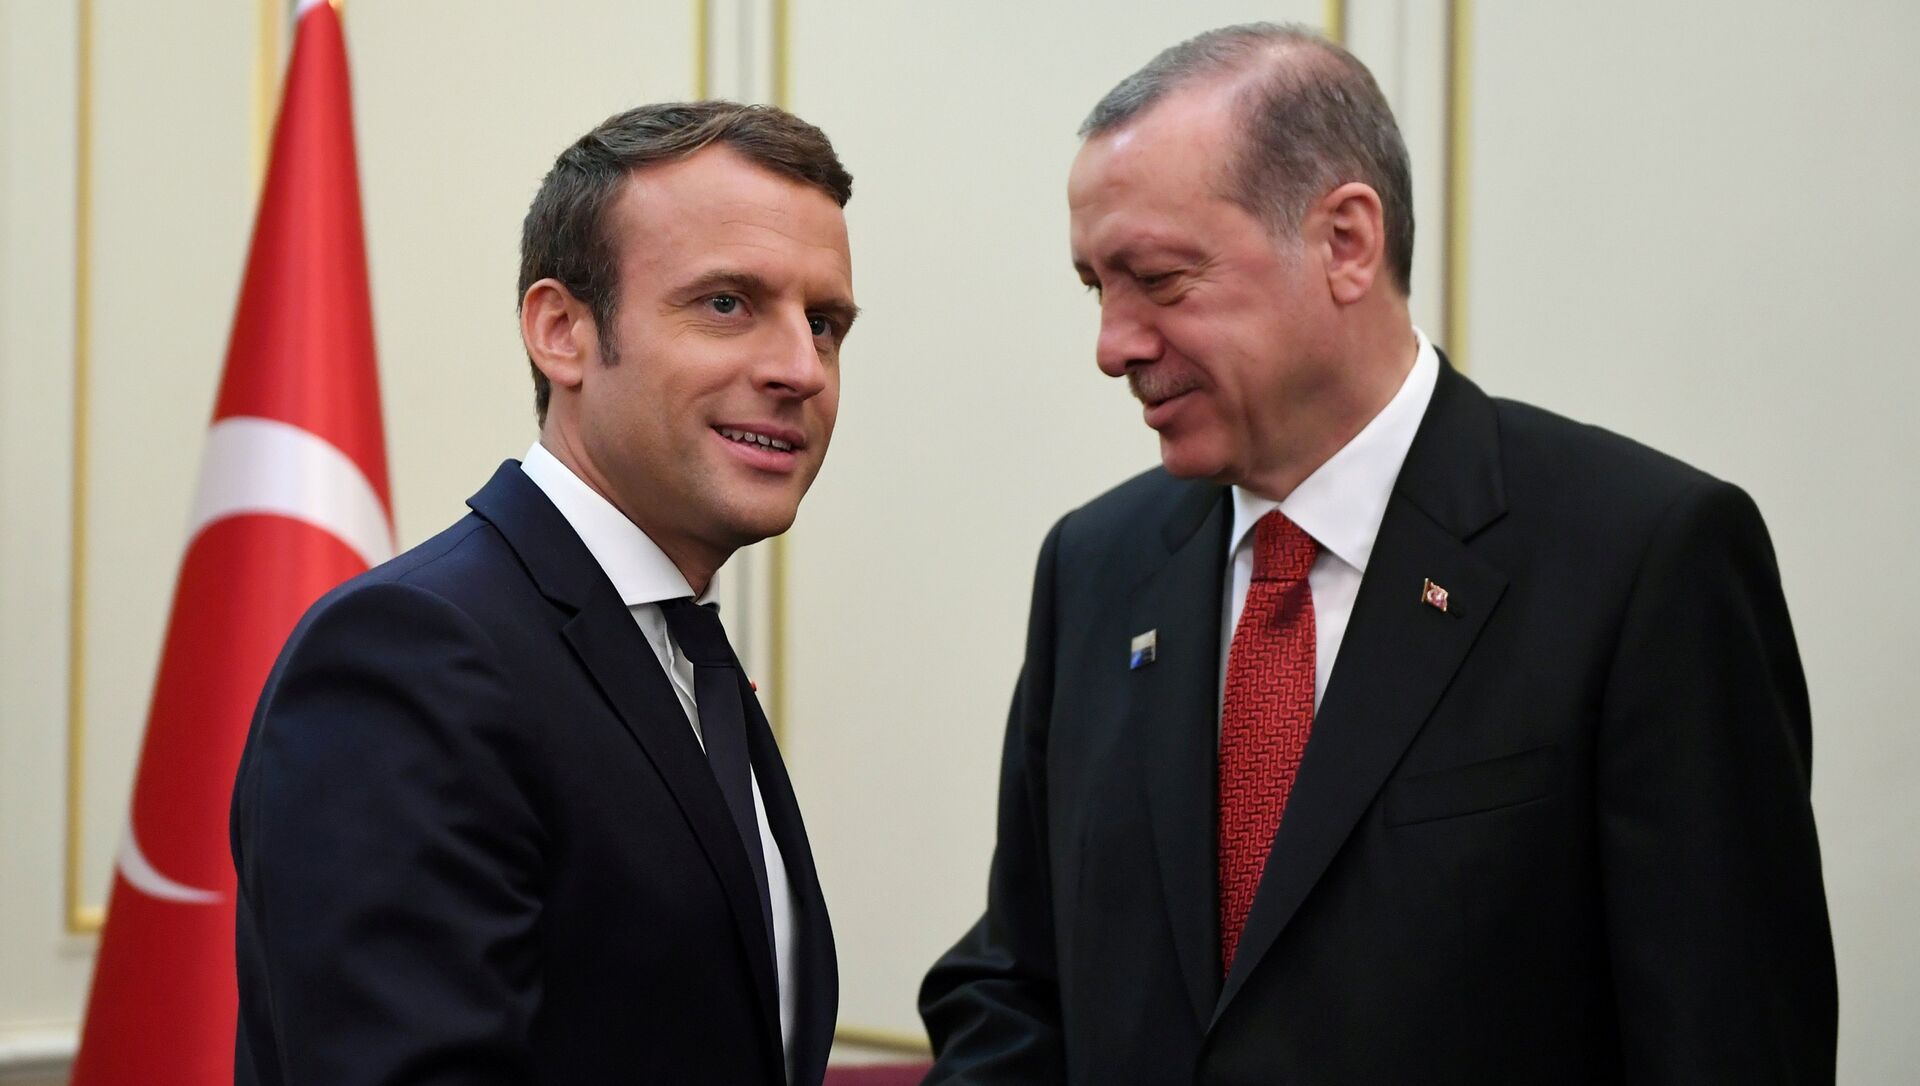 Le président français Emmanuel Macron (G) et le président turc Recep Tayyip Erdogan (D) se serrent la main avant une réunion en marge du sommet de l'OTAN à Bruxelles, en Belgique, le 25 mai 2017.  - Sputnik Afrique, 1920, 25.03.2021